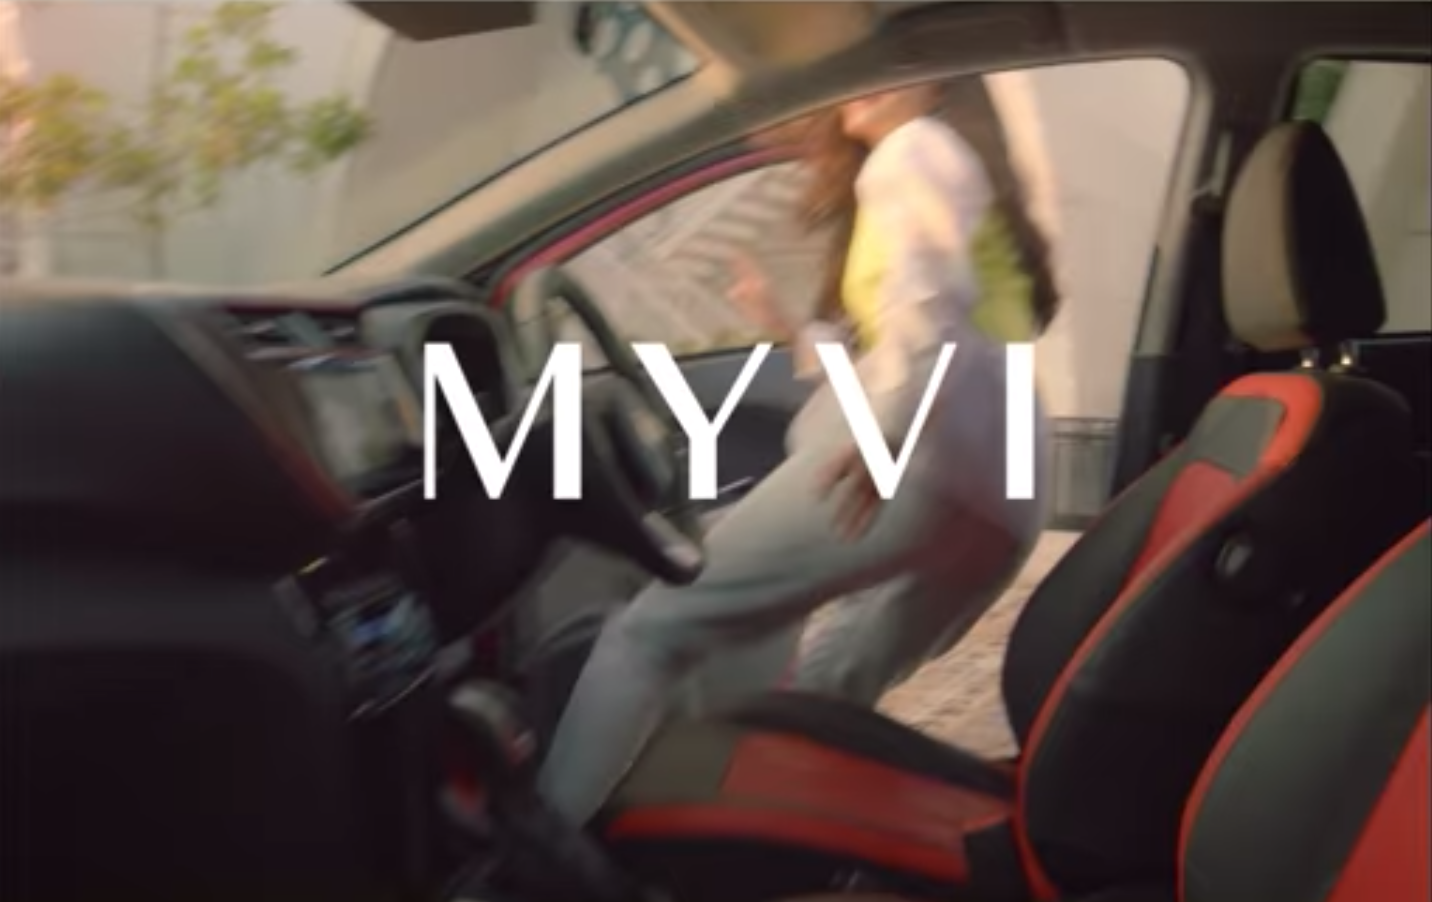 Perodua myvi facelift 2022